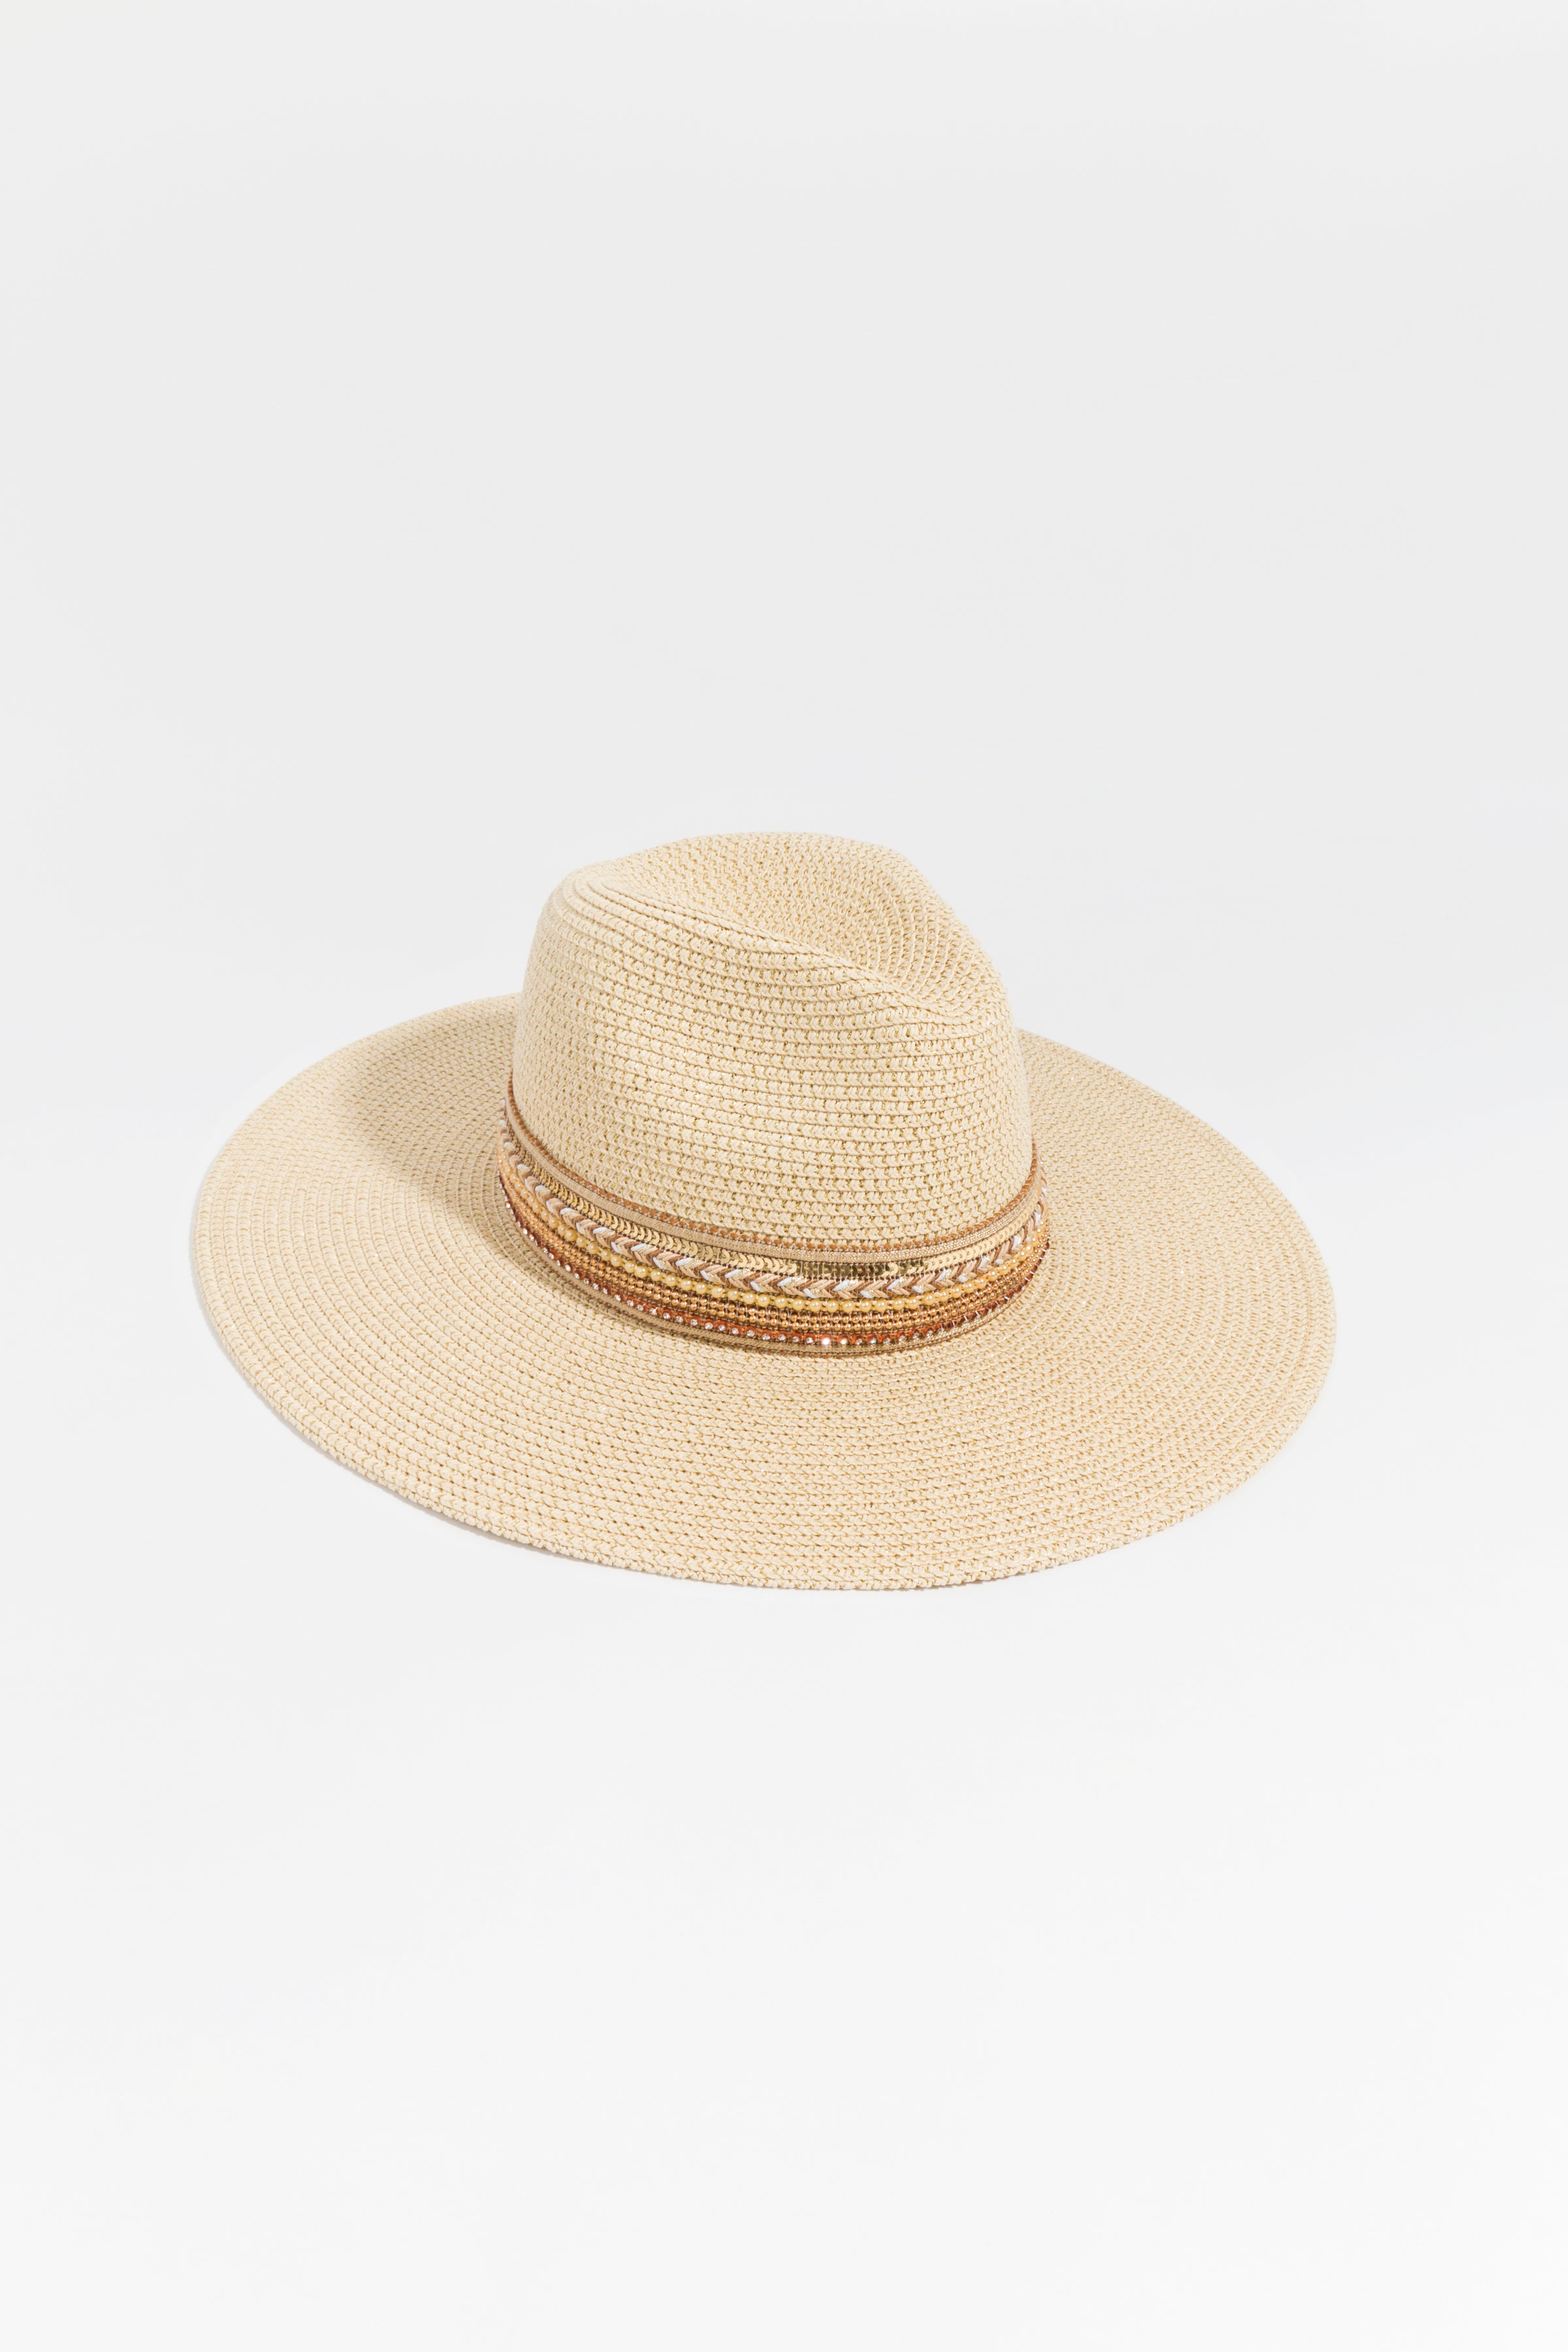 Pia Rossini Deseree Hat in Natural – Leap & Loop